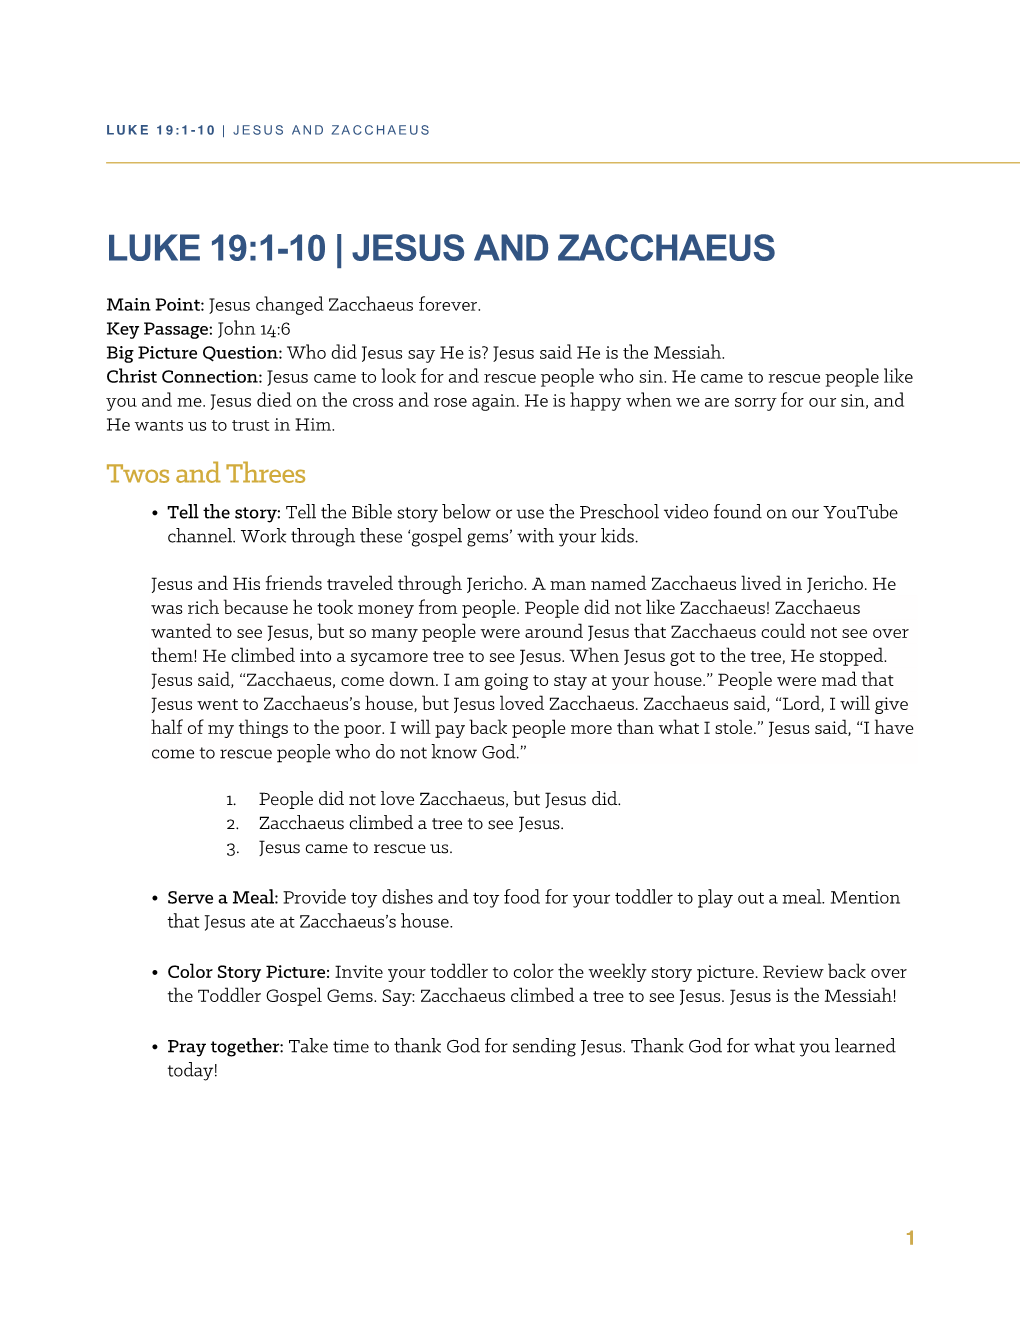 Luke 19:1-10 | Jesus and Zacchaeus